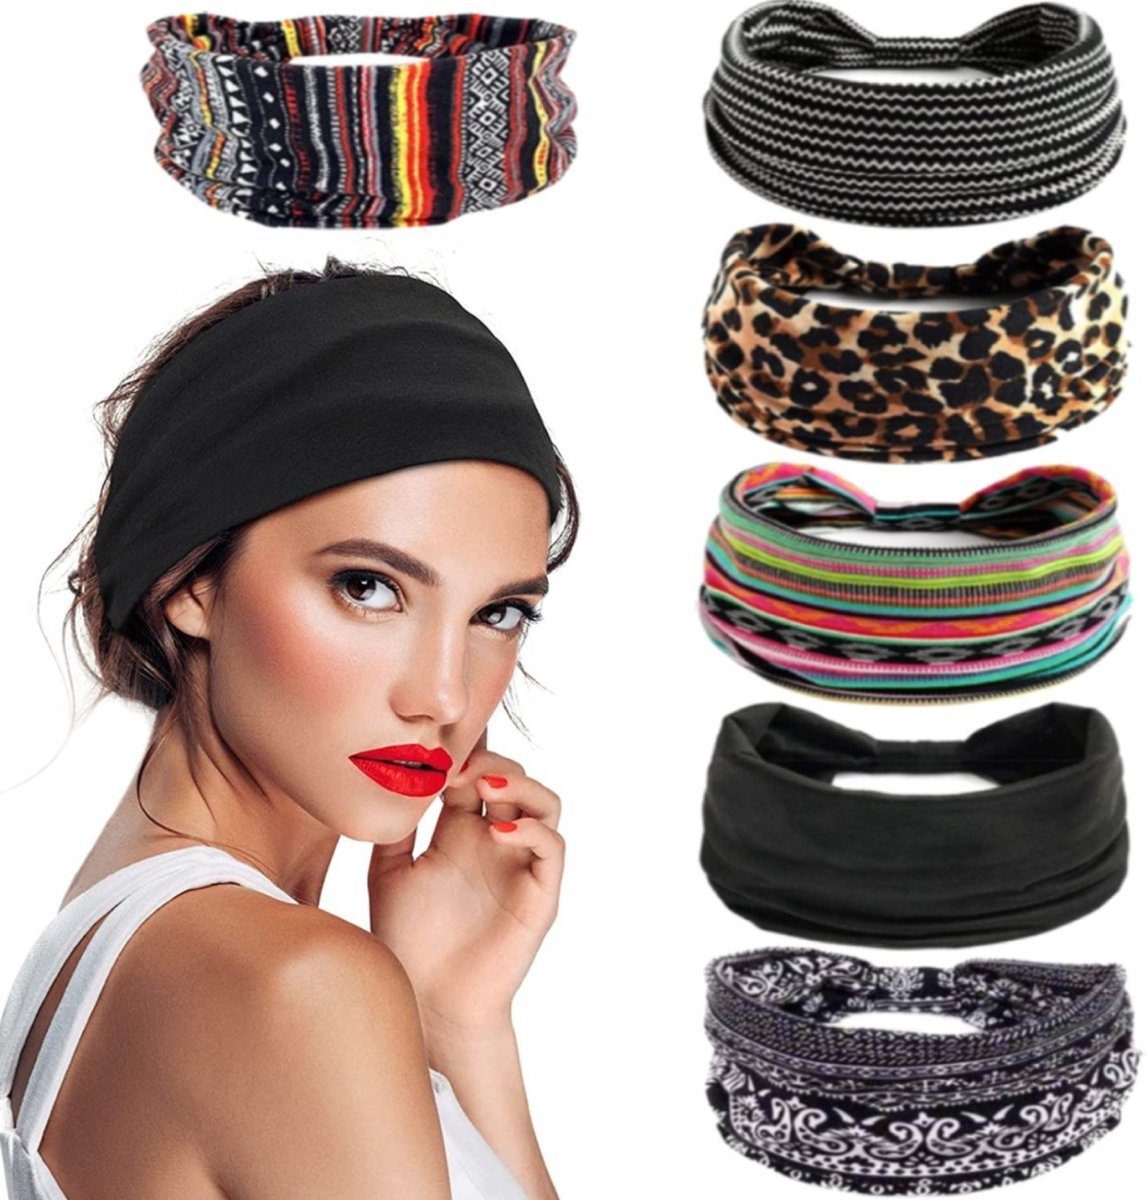 Damenhaarbänder 6 elastisch Haarband, (6-teiliges Yoga weich Boho Farbmischungen Damen Set, Kopfband Stirnbänder Haarbändern) Stirnband Sport – BOTC 23*10CM,